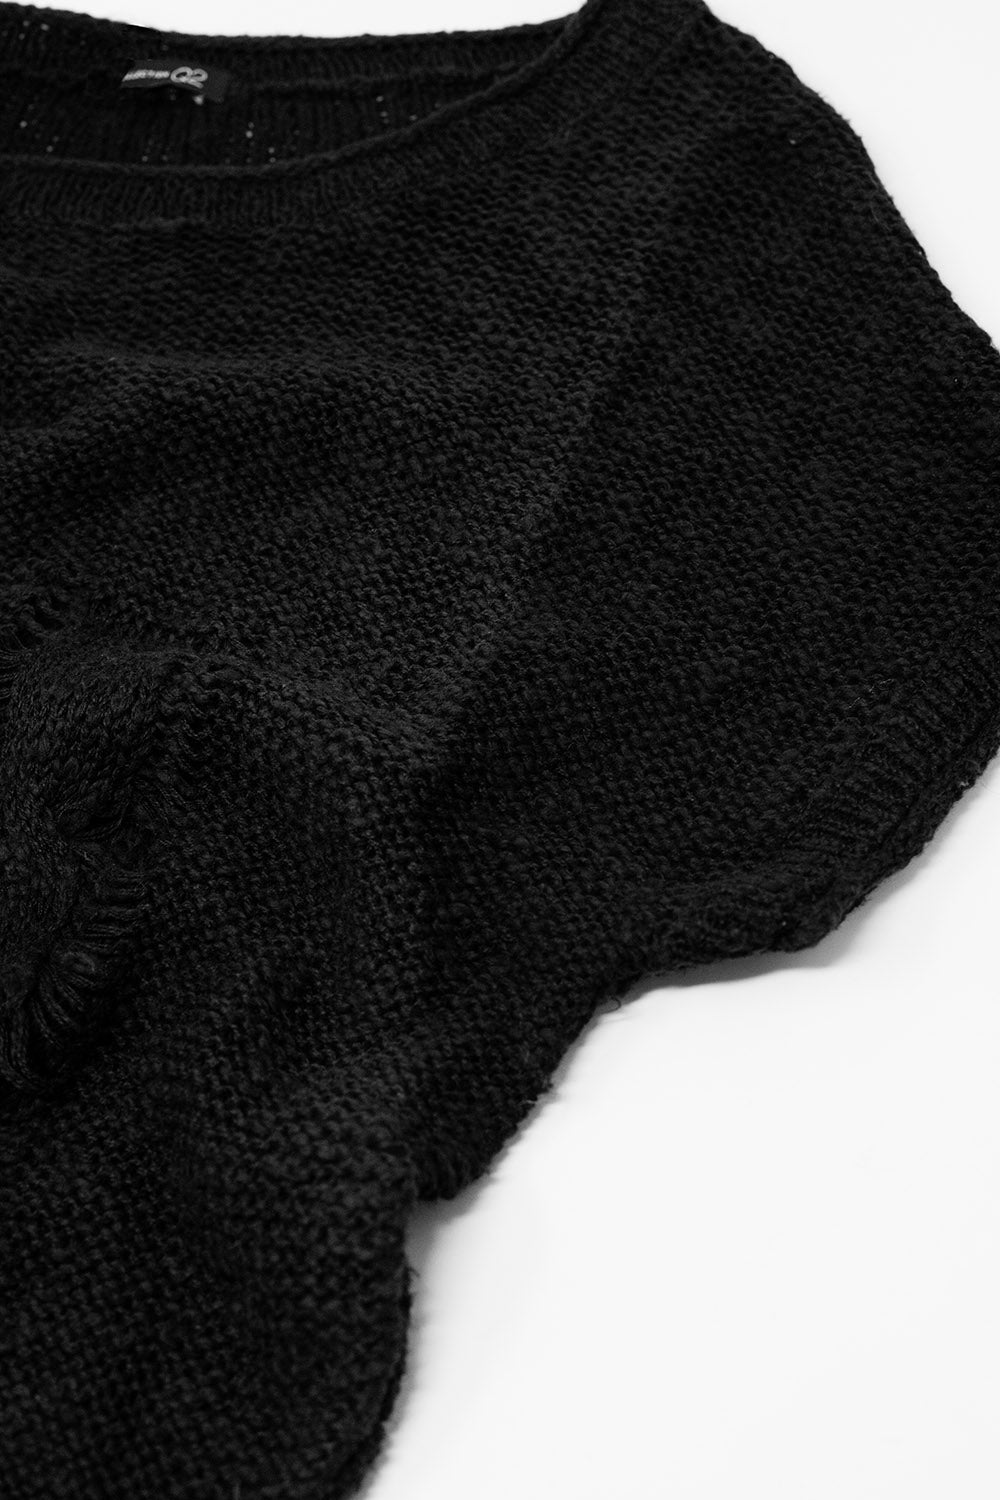 maglione nero lungo senza maniche